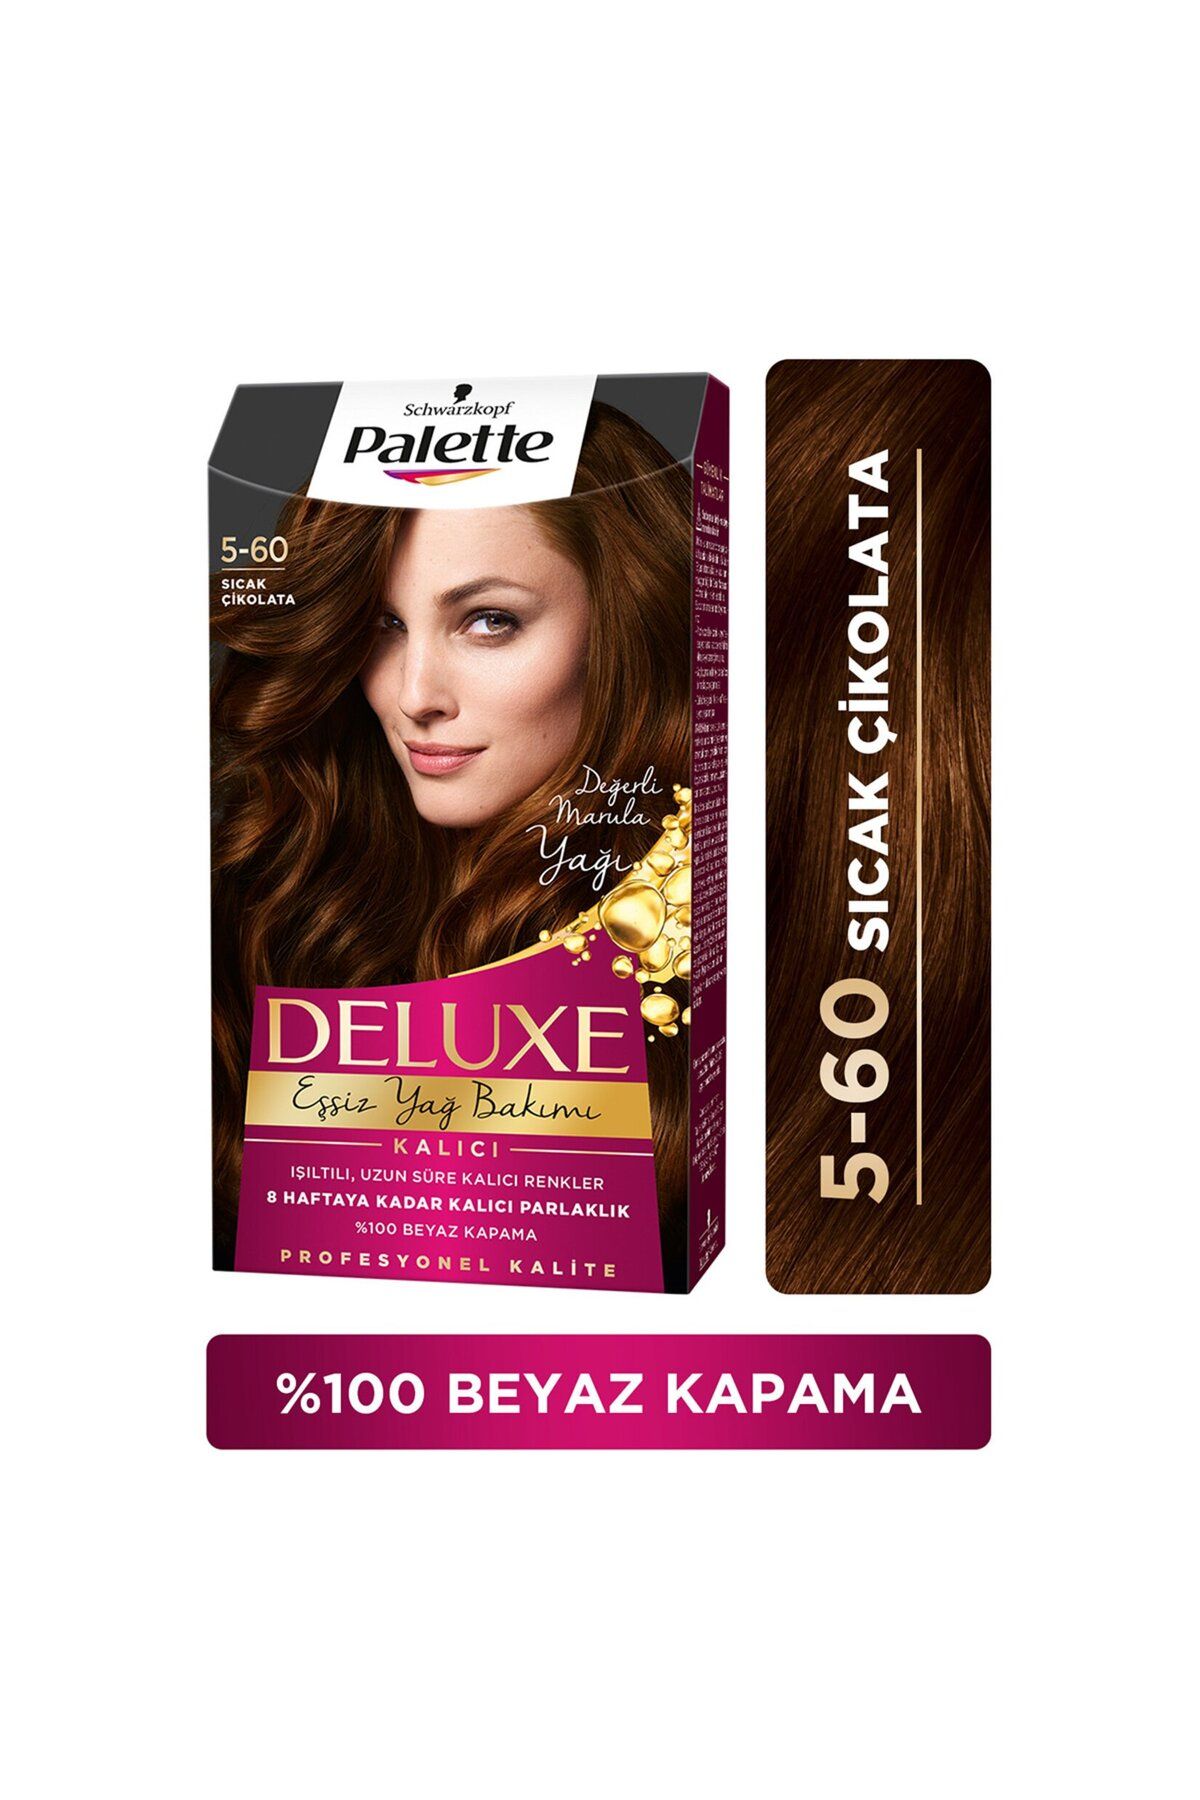 Palette Deluxe Saç Boyası Sıcak Çikolata 5-60 80 ml